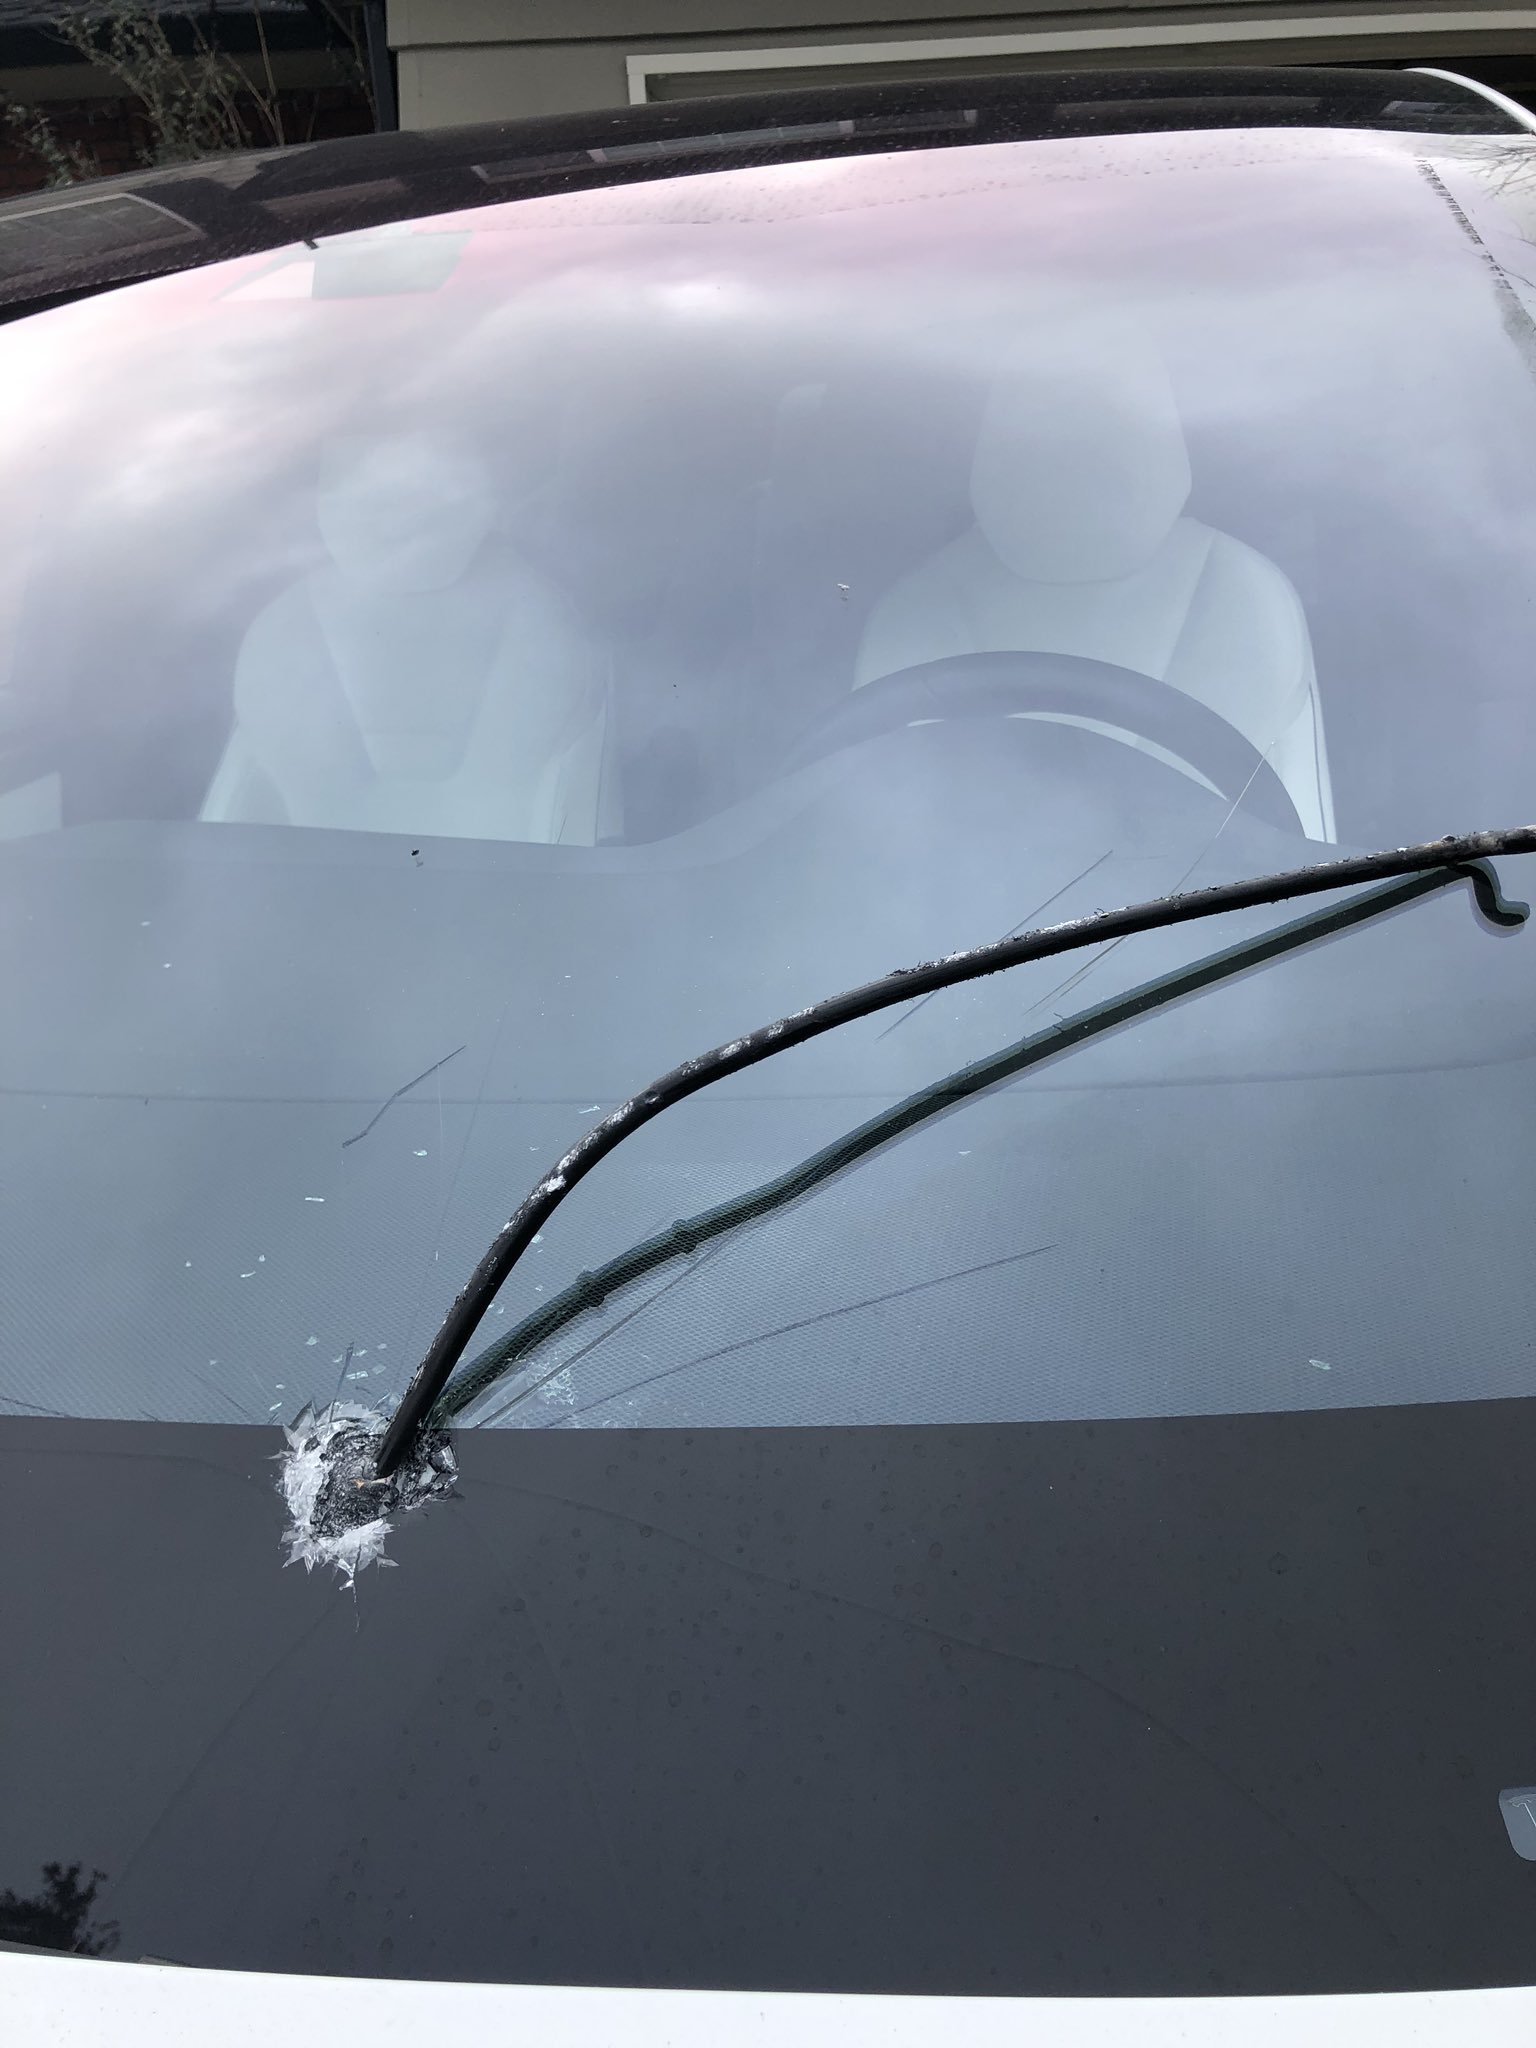 Tesla Model X hit by a flying steel rod.